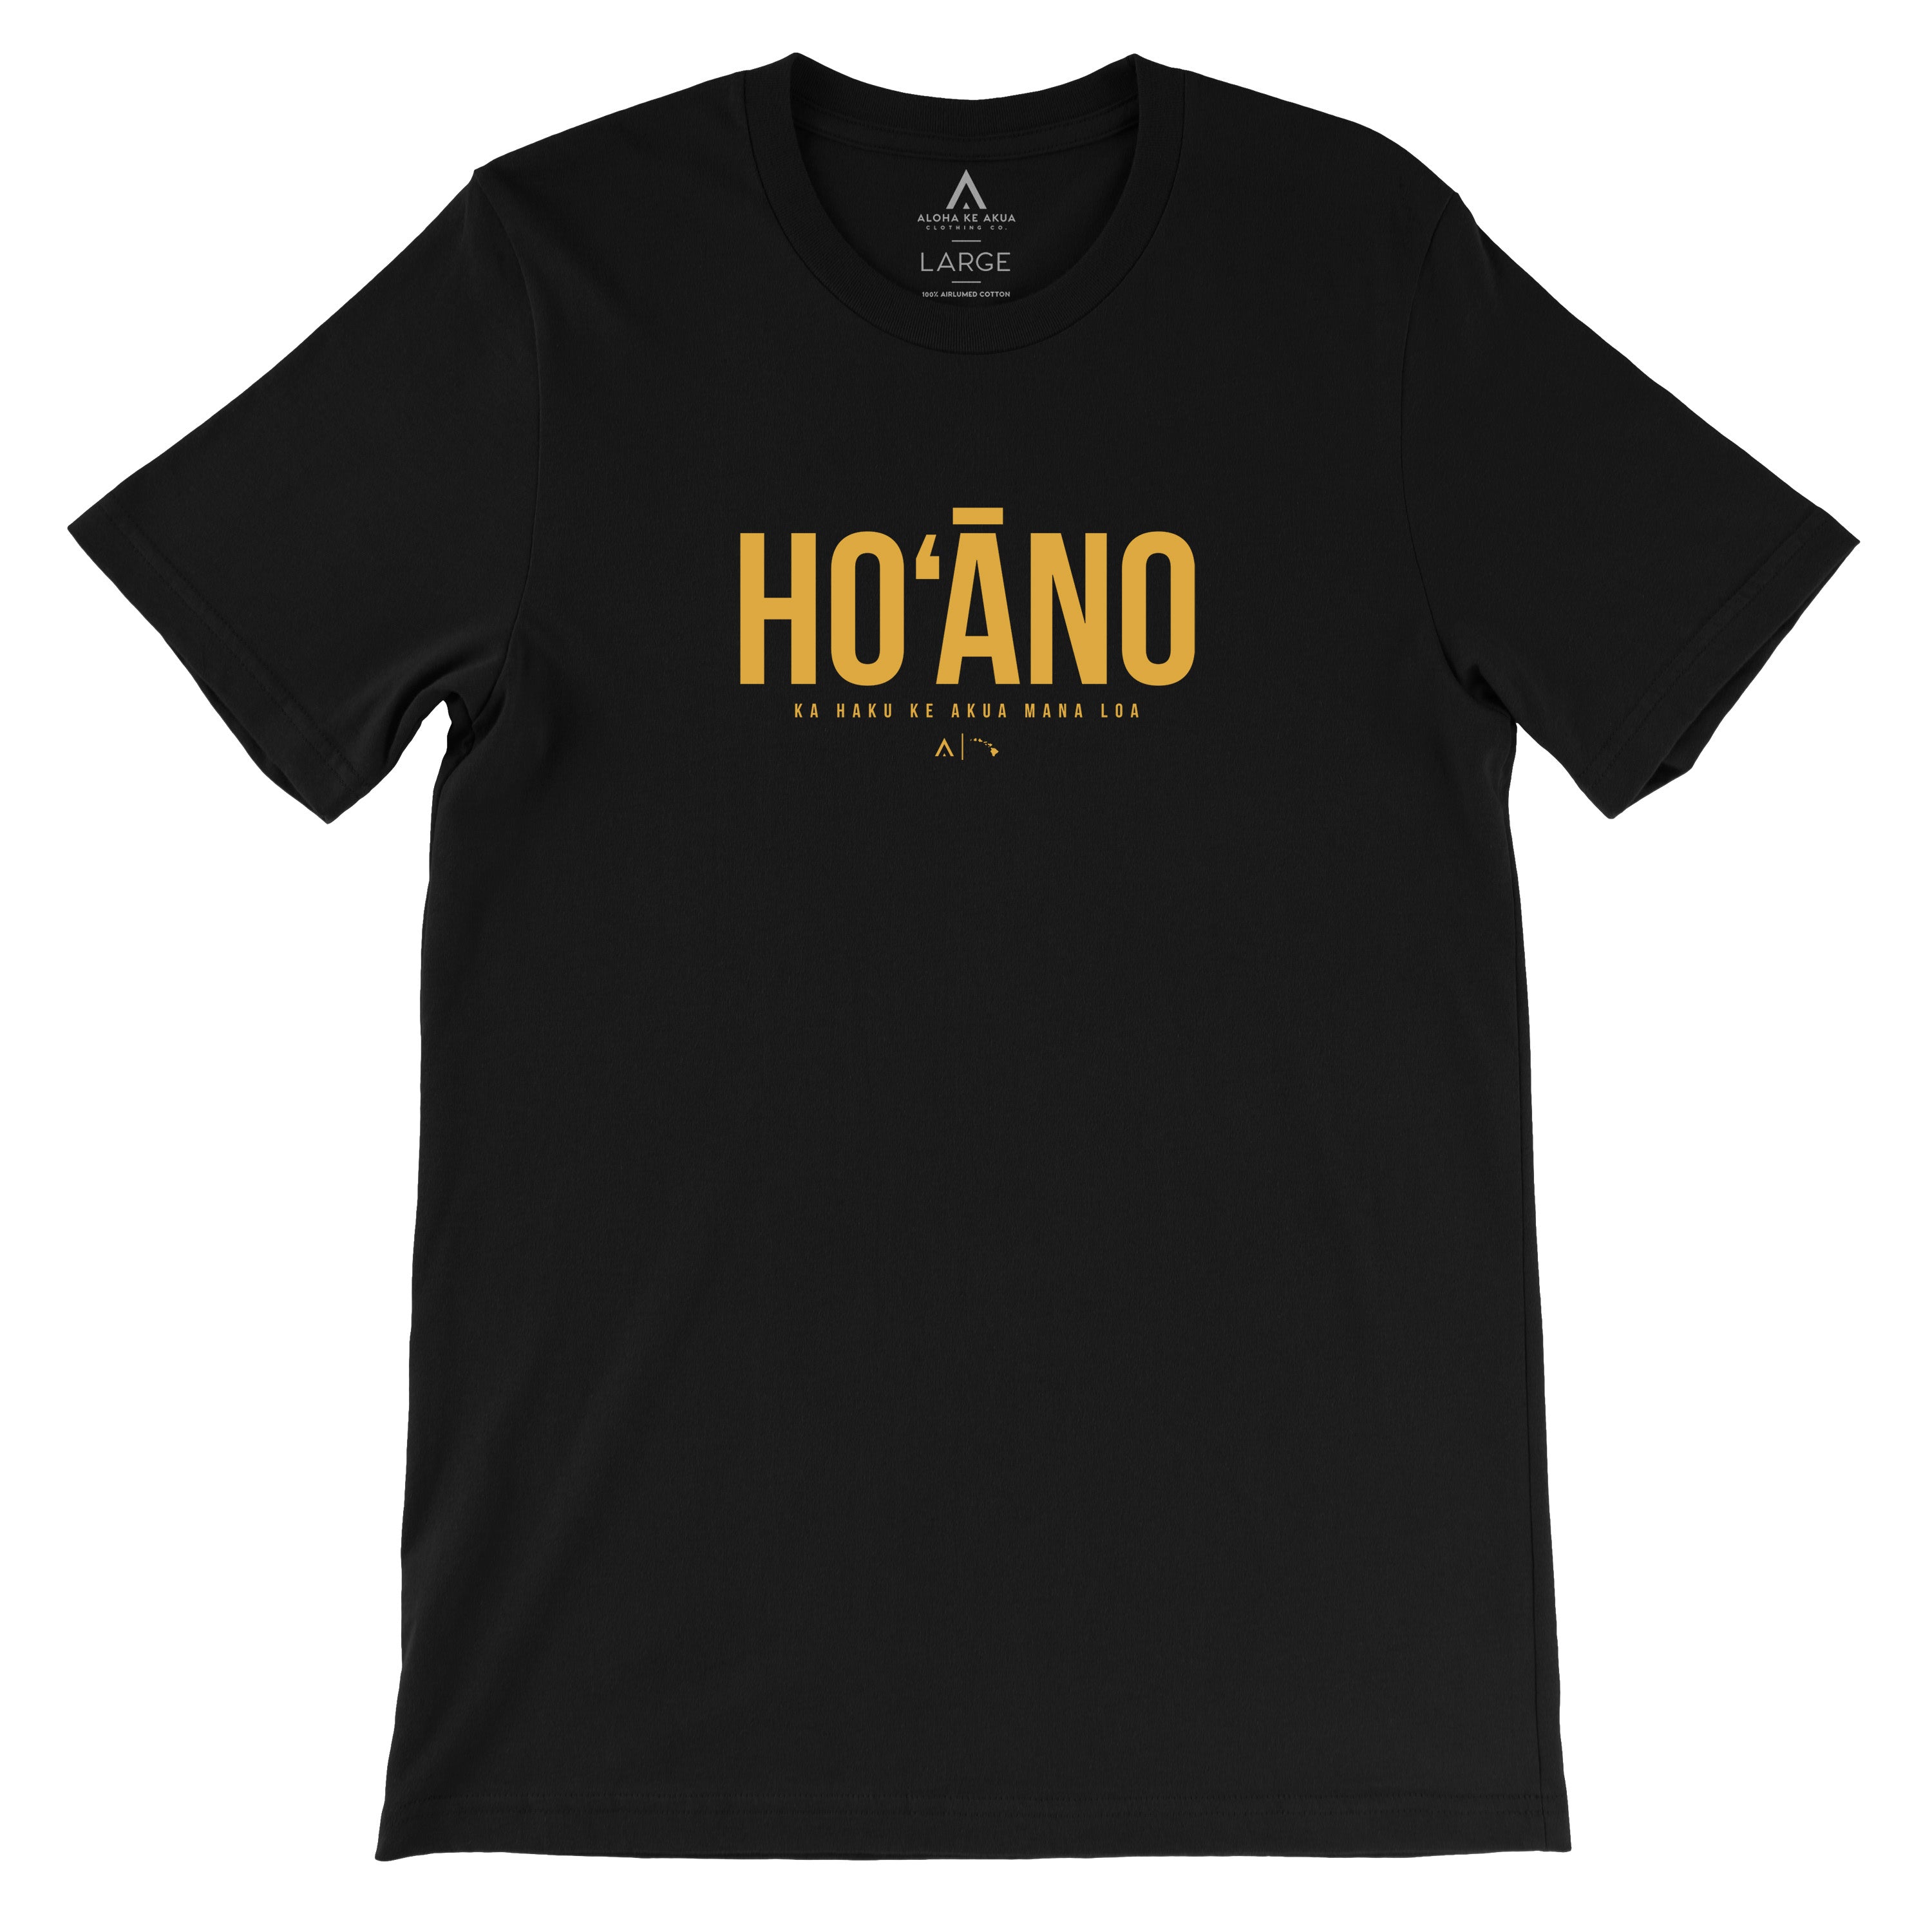 Hoano Holy Shirt